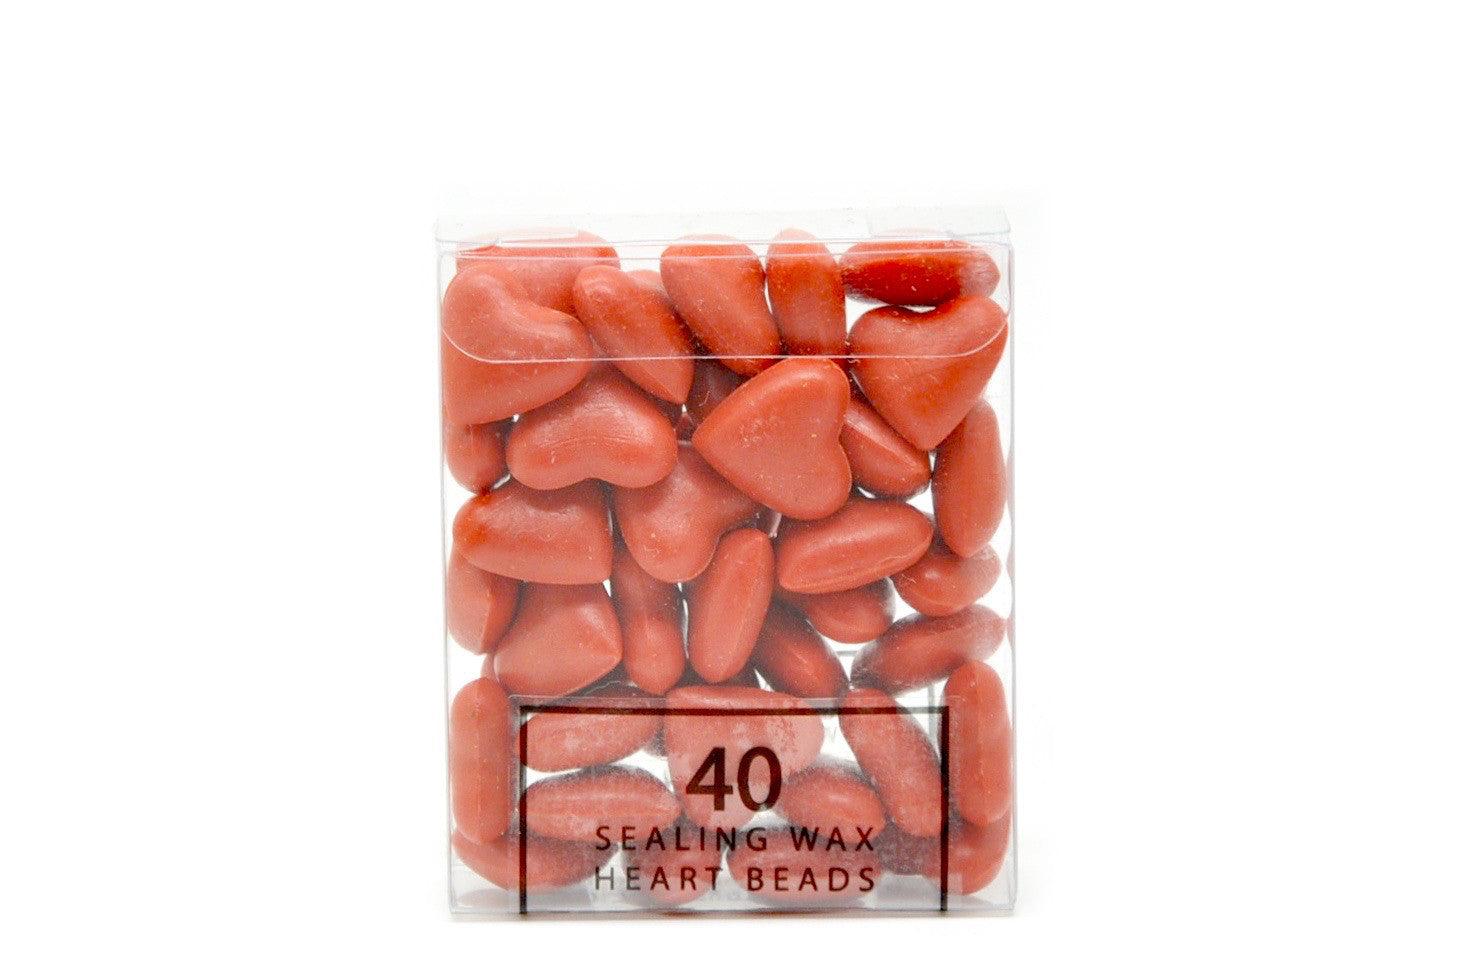 Orange Sealing Wax Heart Bead - Backtozero B20 - Heart Bead, Heart Wax, Orange, sale, Sealing Wax, Wax Bead